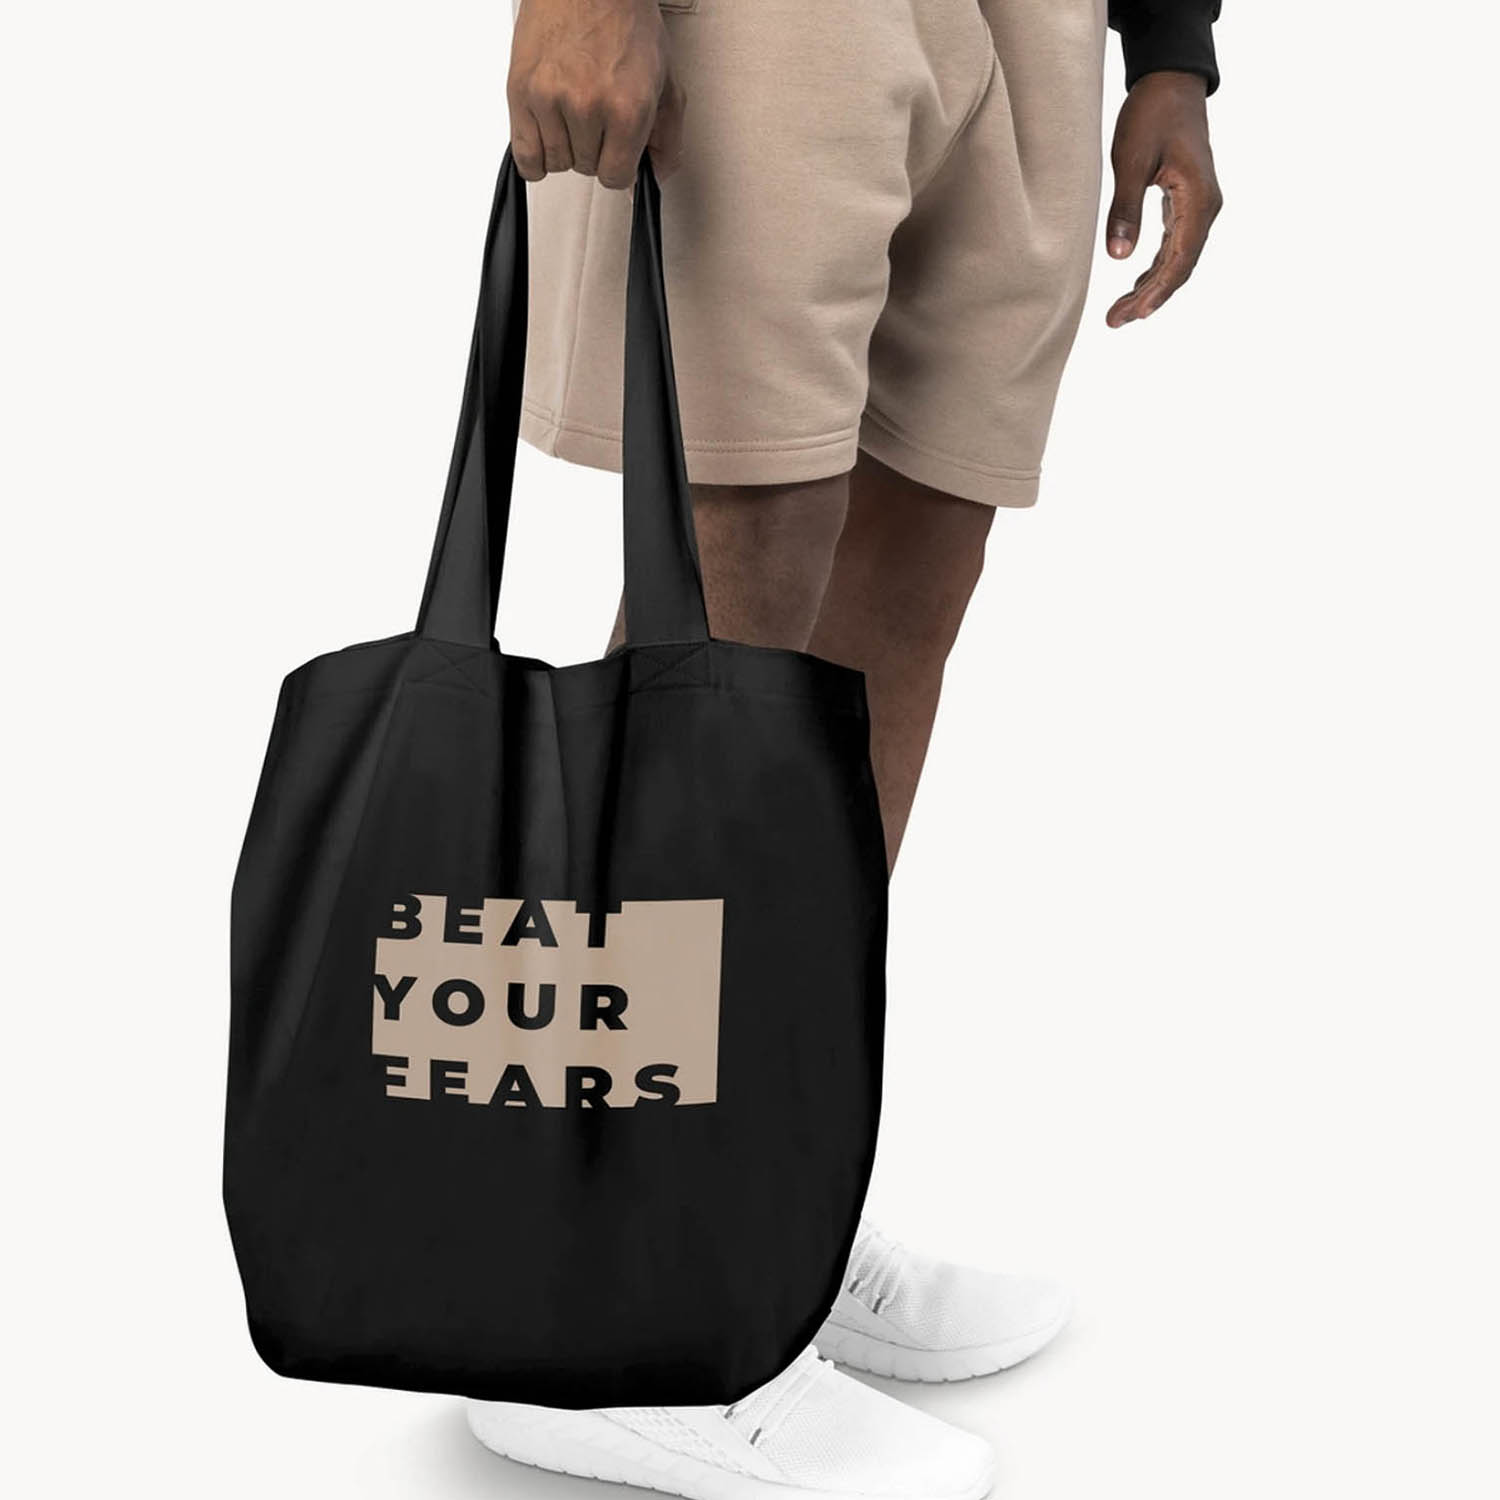 Custom Tote Bags in Bulk Custom Text Bag Promotional Tote 